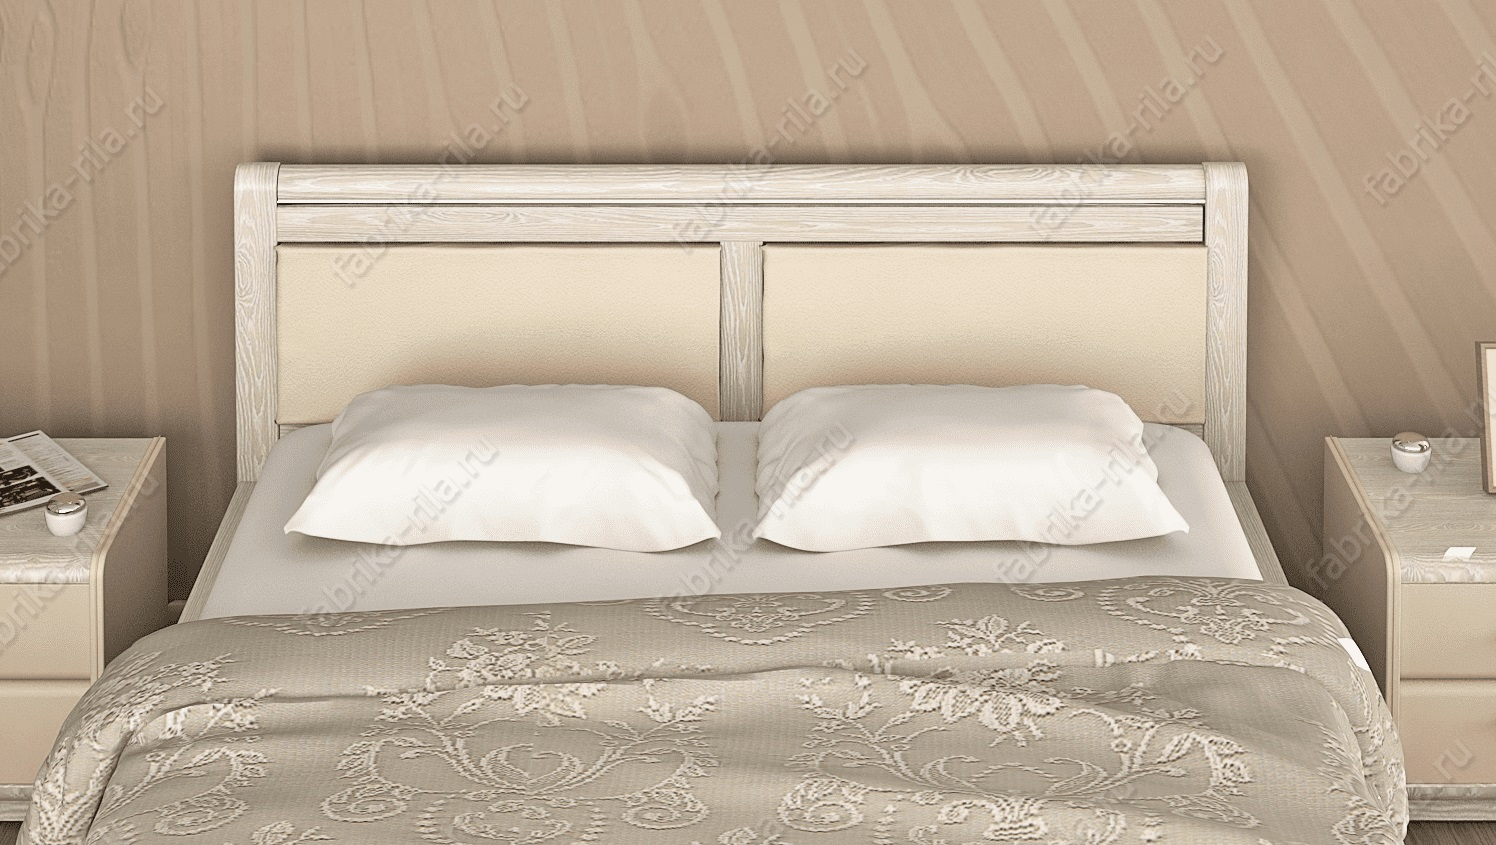 Кровать Okaeri 5 — 90x190 см. из ясеня